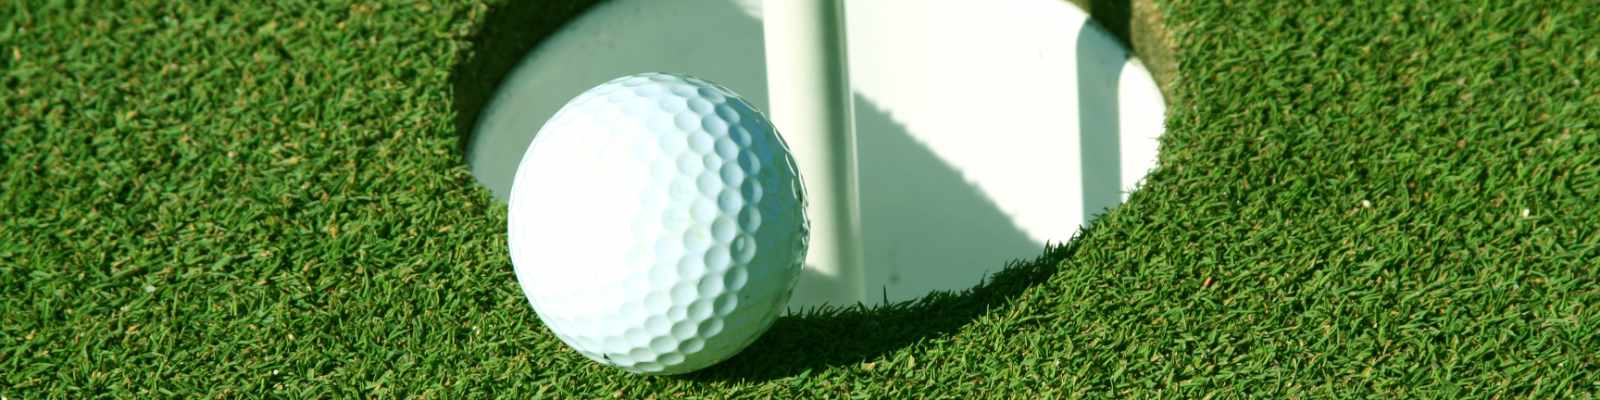 https://www.mygolf.de/news/imagedata/Golfball am Flaggenstock (photo by Matt Apps / Shutterstock.com)